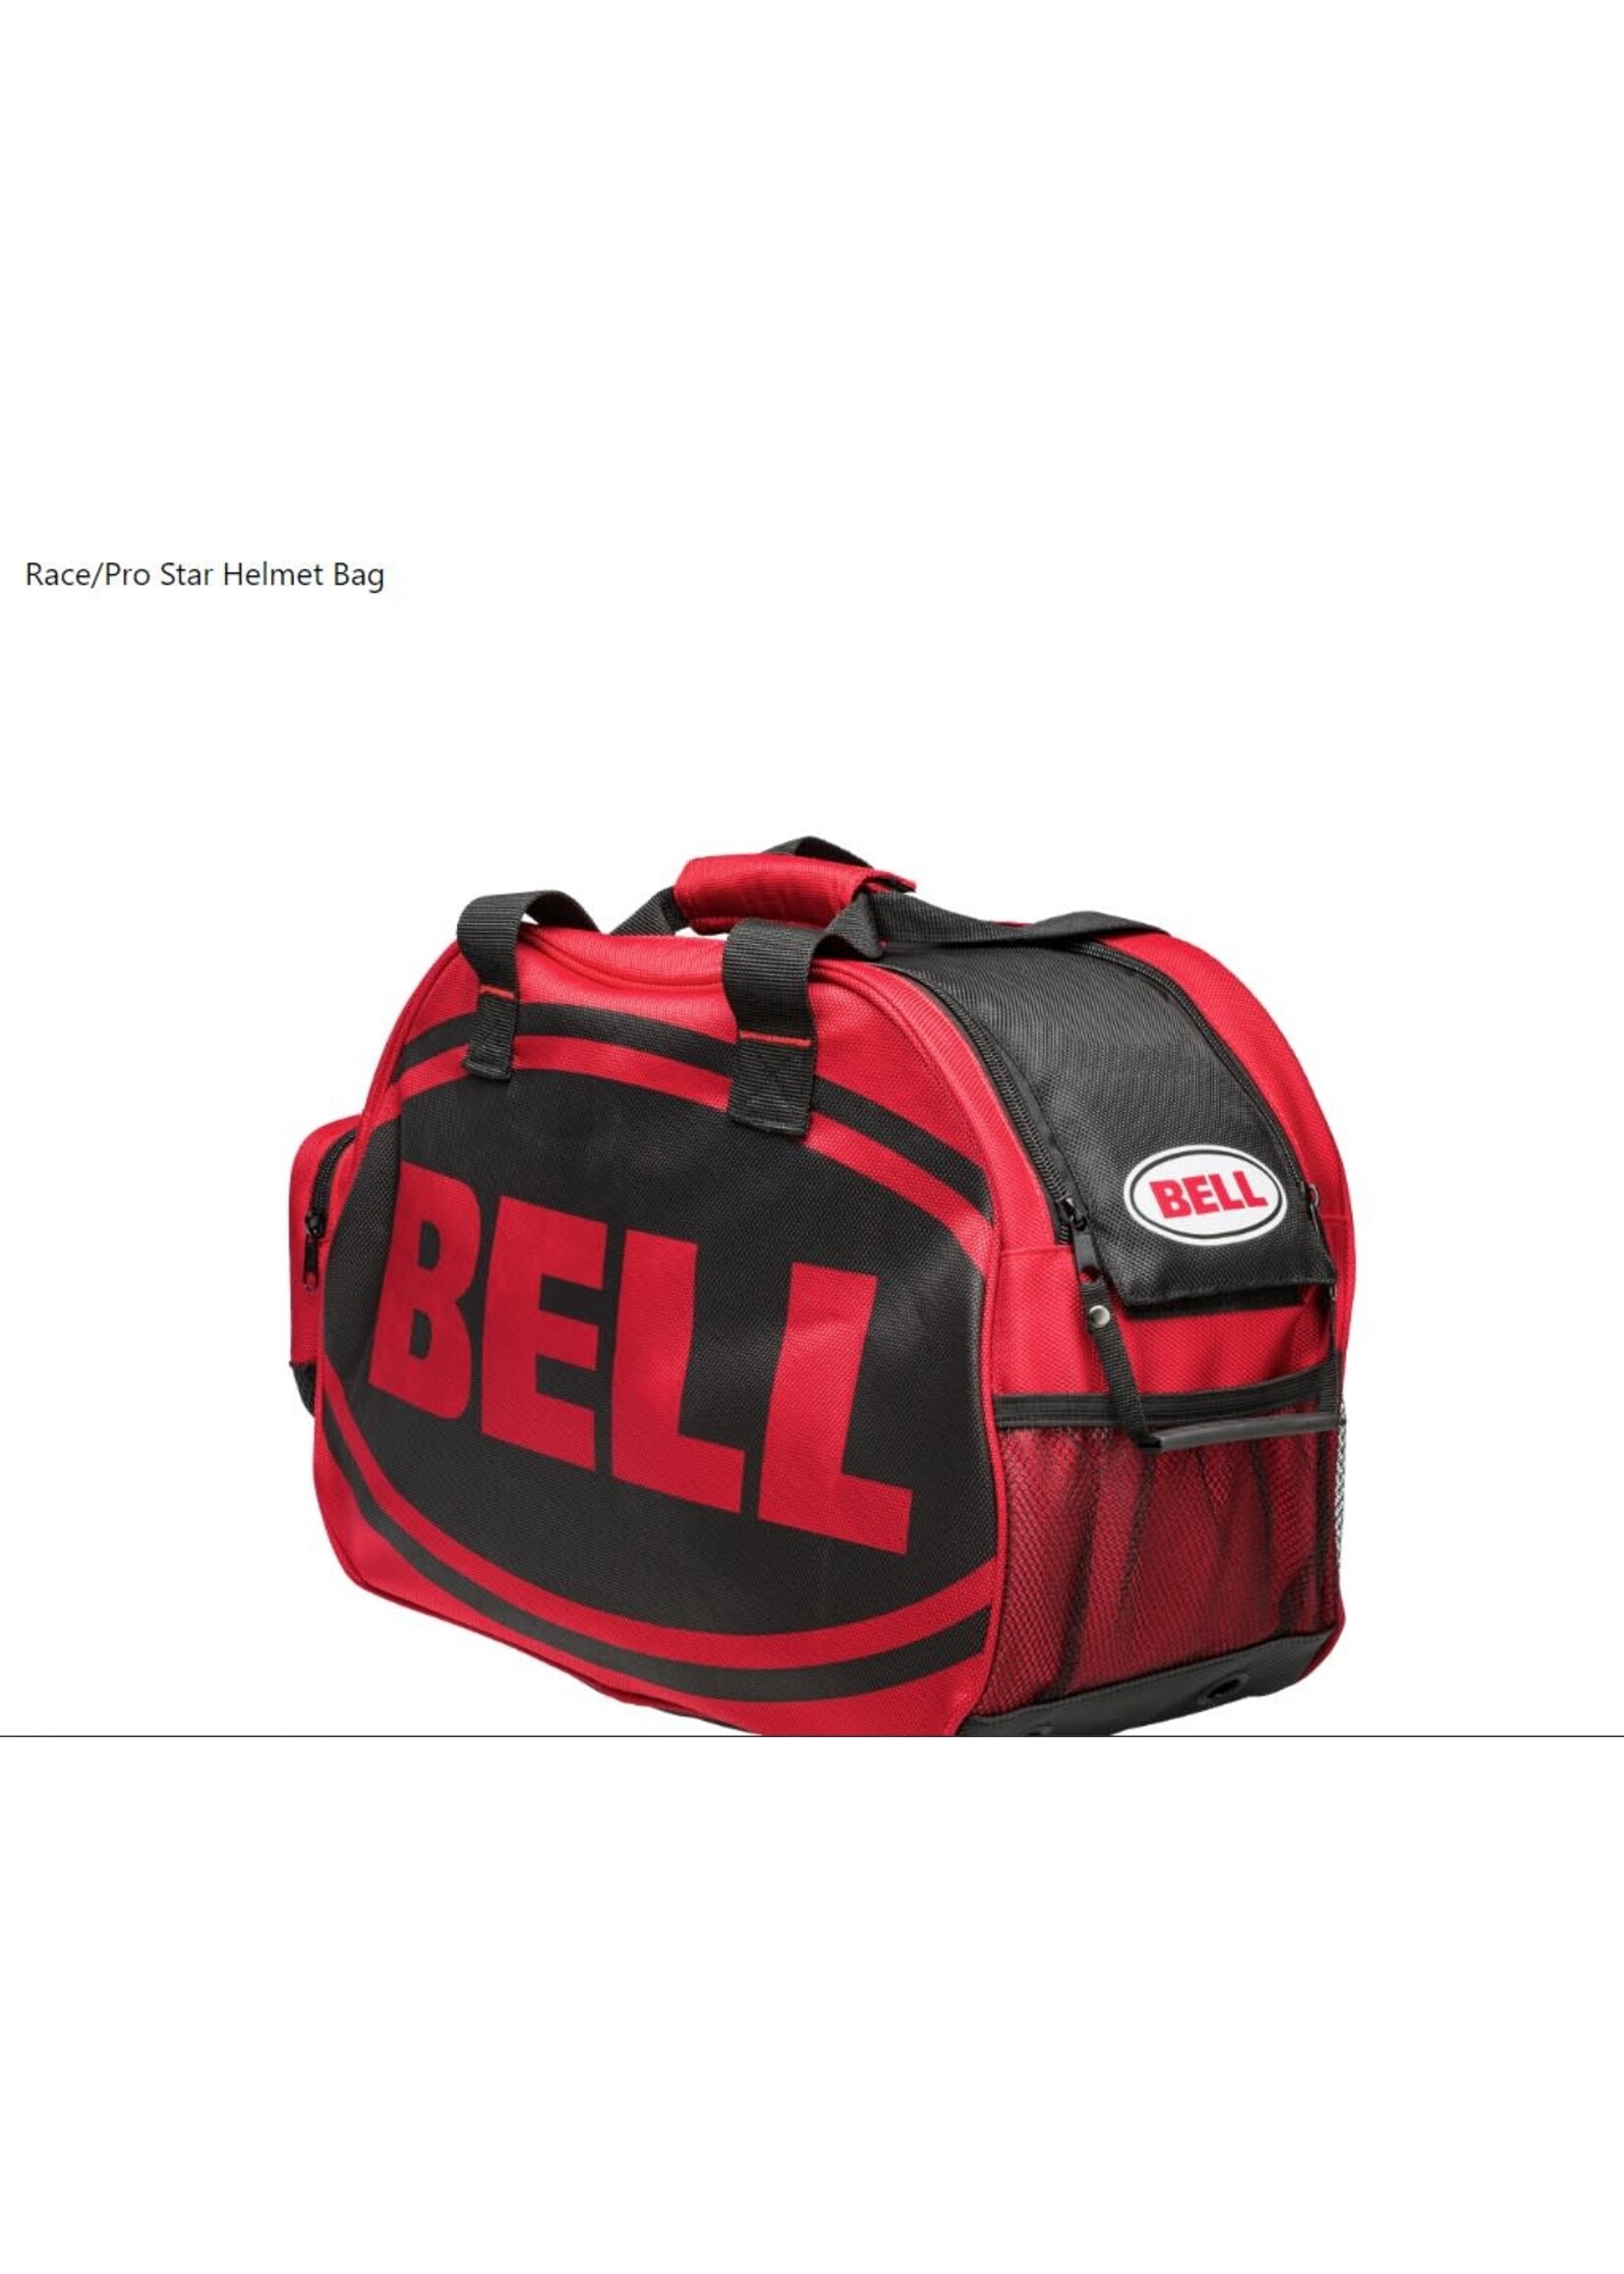 Bell Race/Pro Star Helmet Bag Red